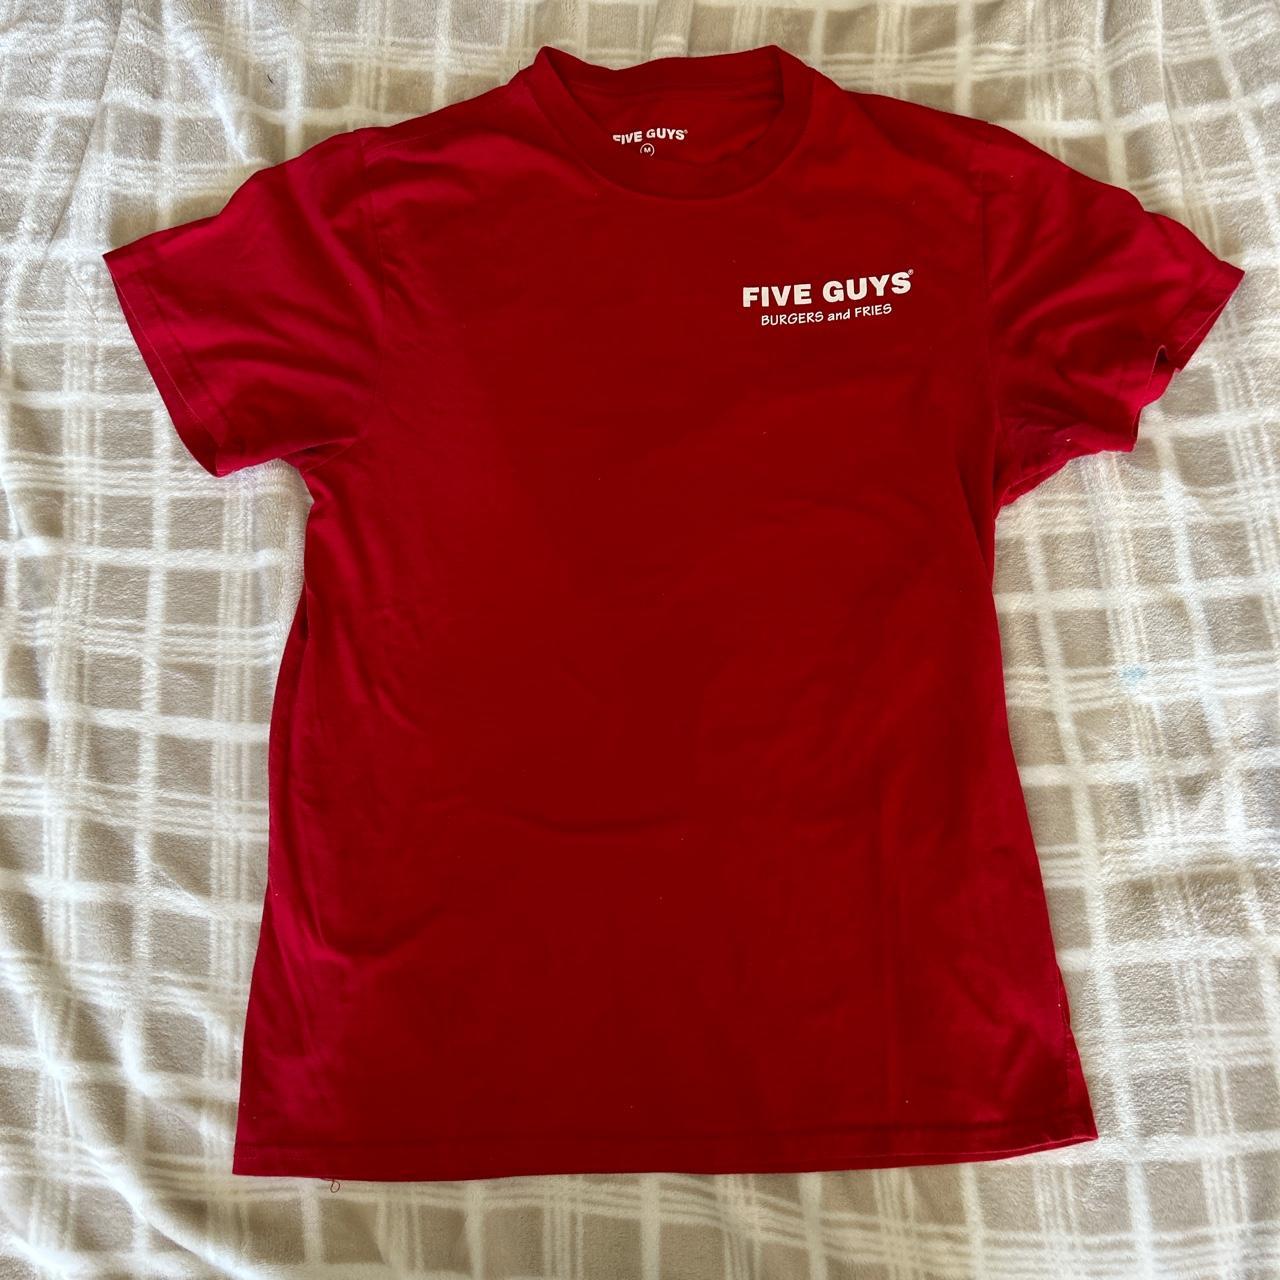 Five Guys red t-shirt - Depop